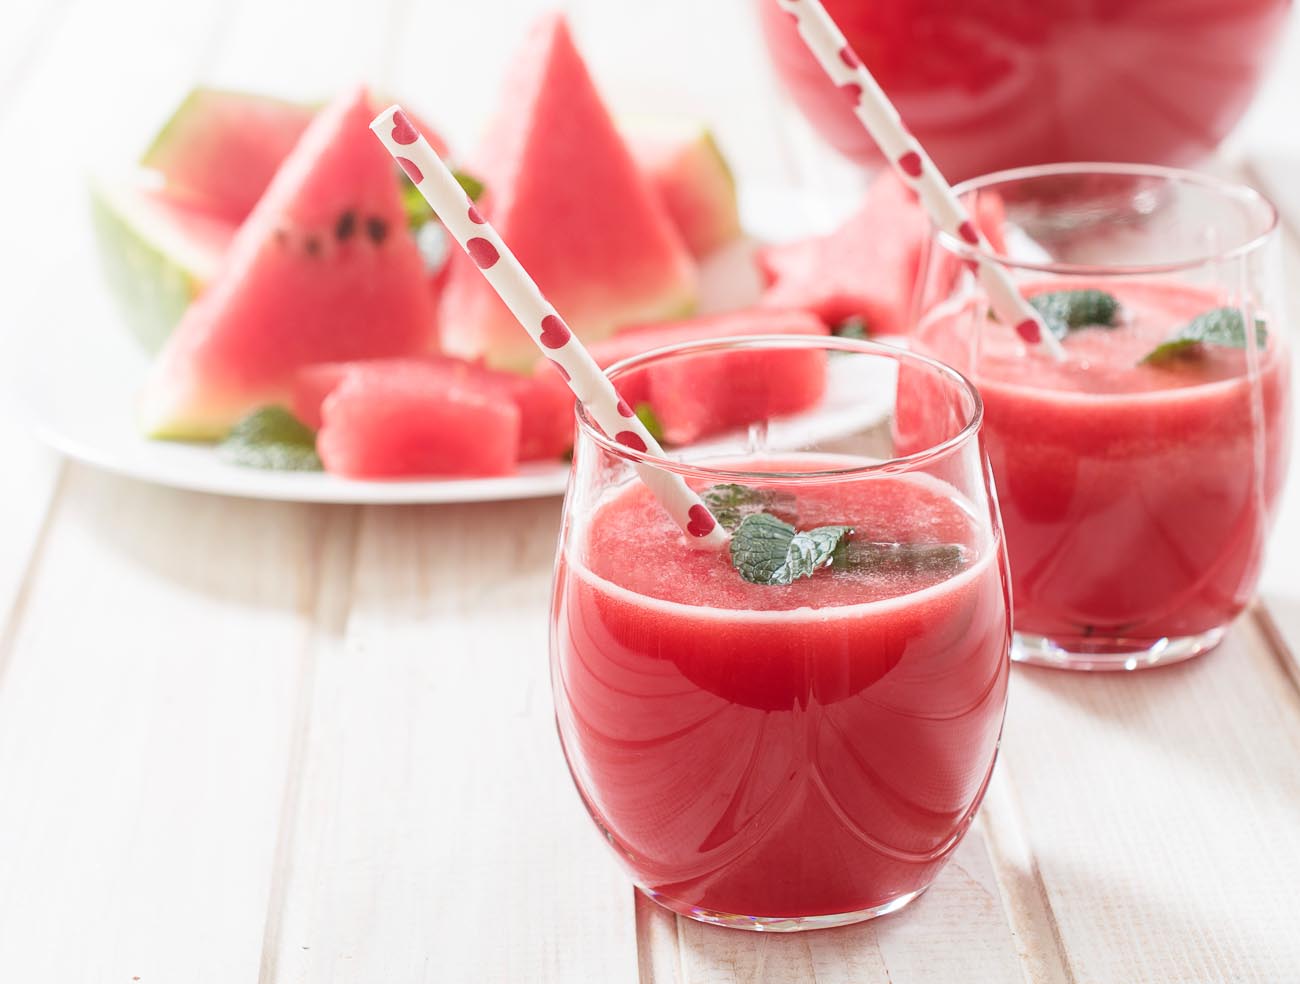 https://www.archanaskitchen.com/images/archanaskitchen/World_Beverages/Watermelon_Smoothie_Recipe-1.jpg